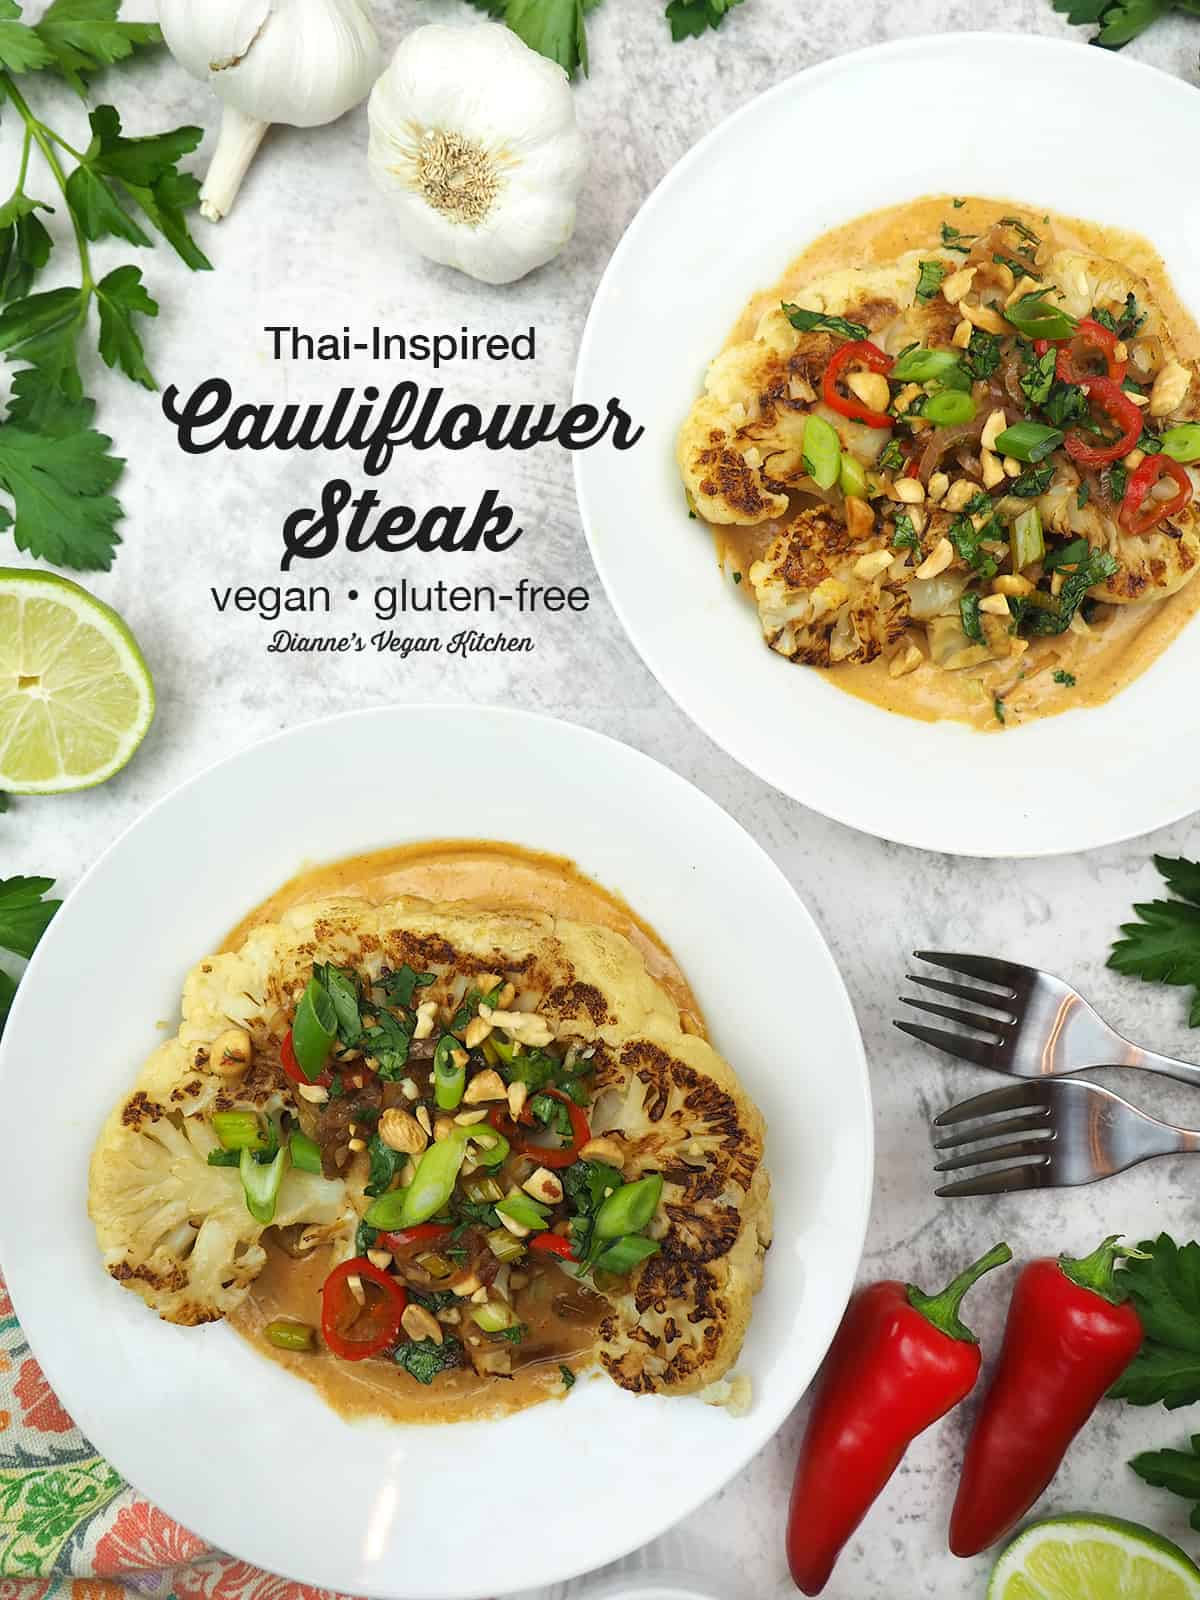 Thai-Inspired Cauliflower Steak with text overlay